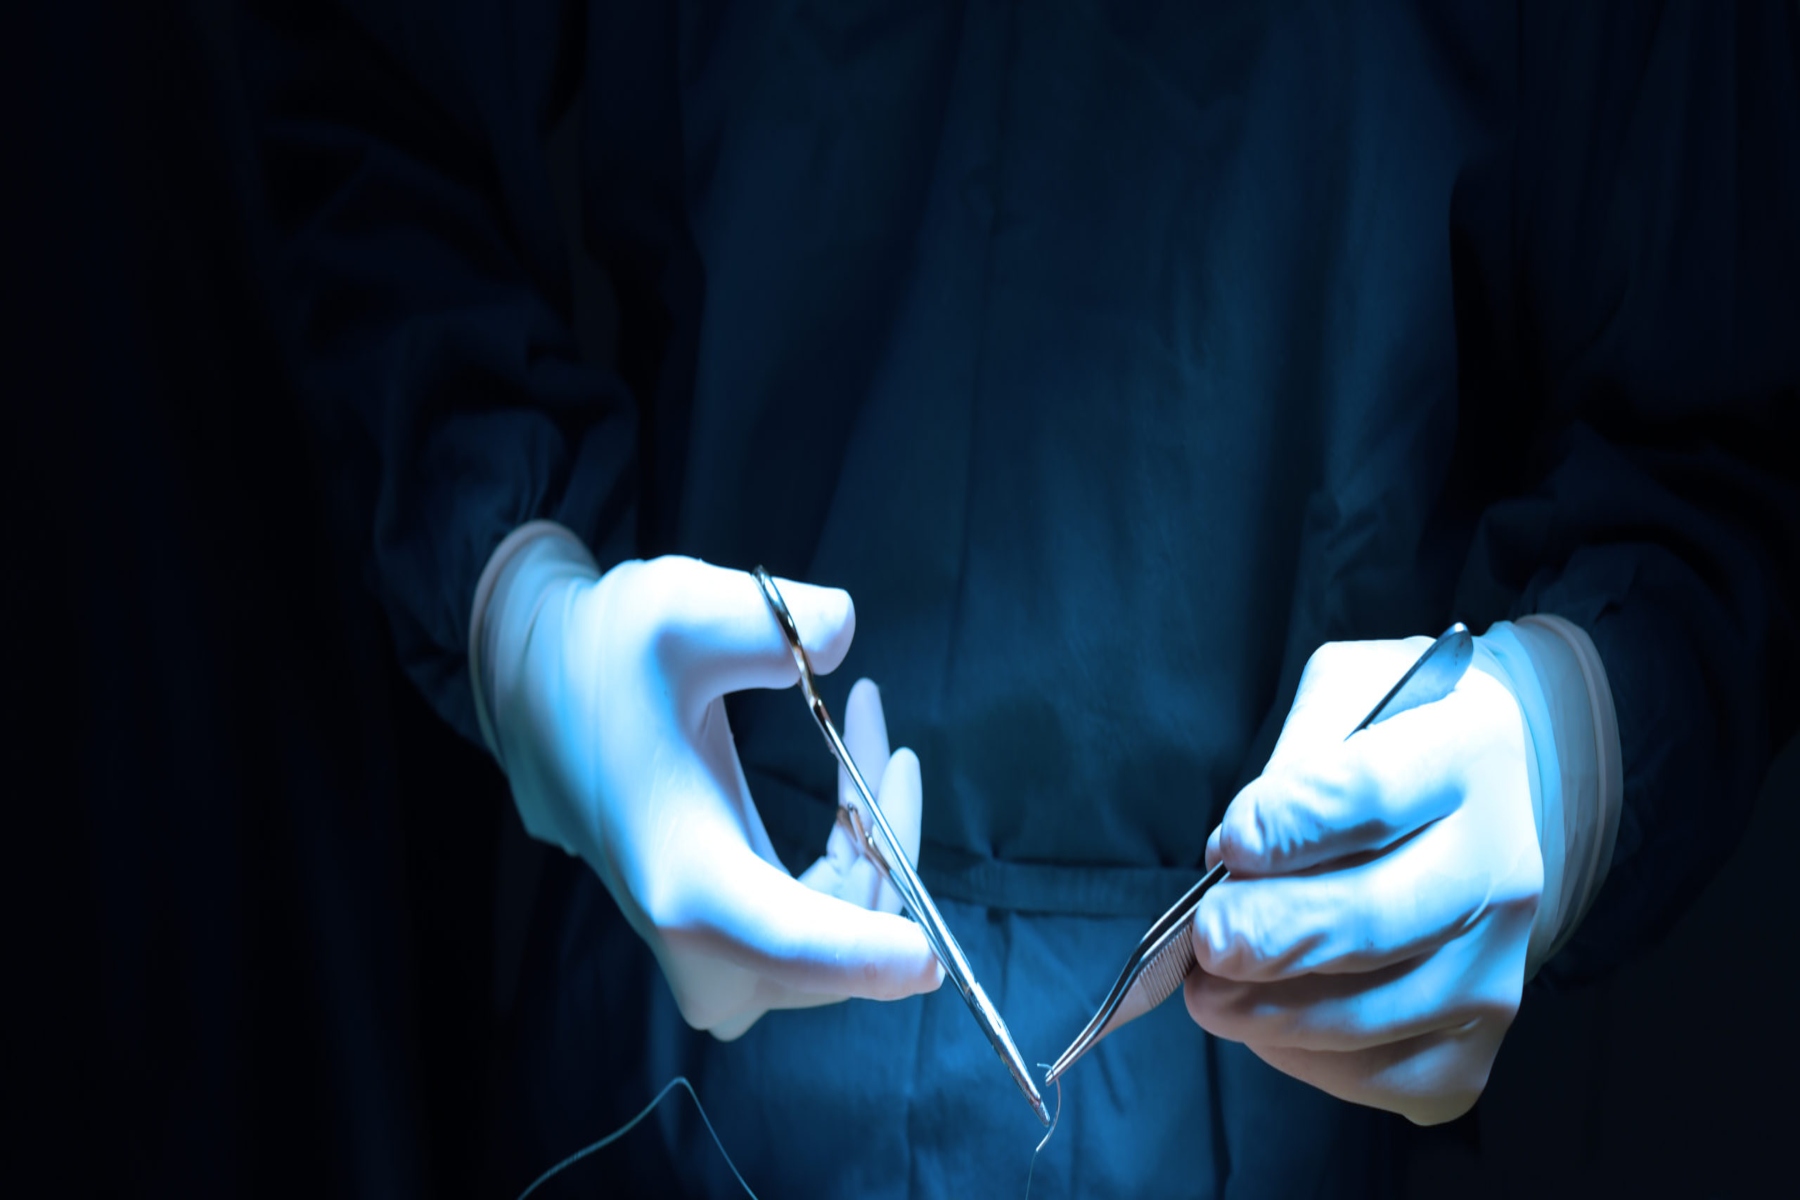 Χειρουργείο τεχνικές: Τι πρέπει να γνωρίζουμε για την τεχνολογία που χρησιμοποιείται στα χειρουργεία;